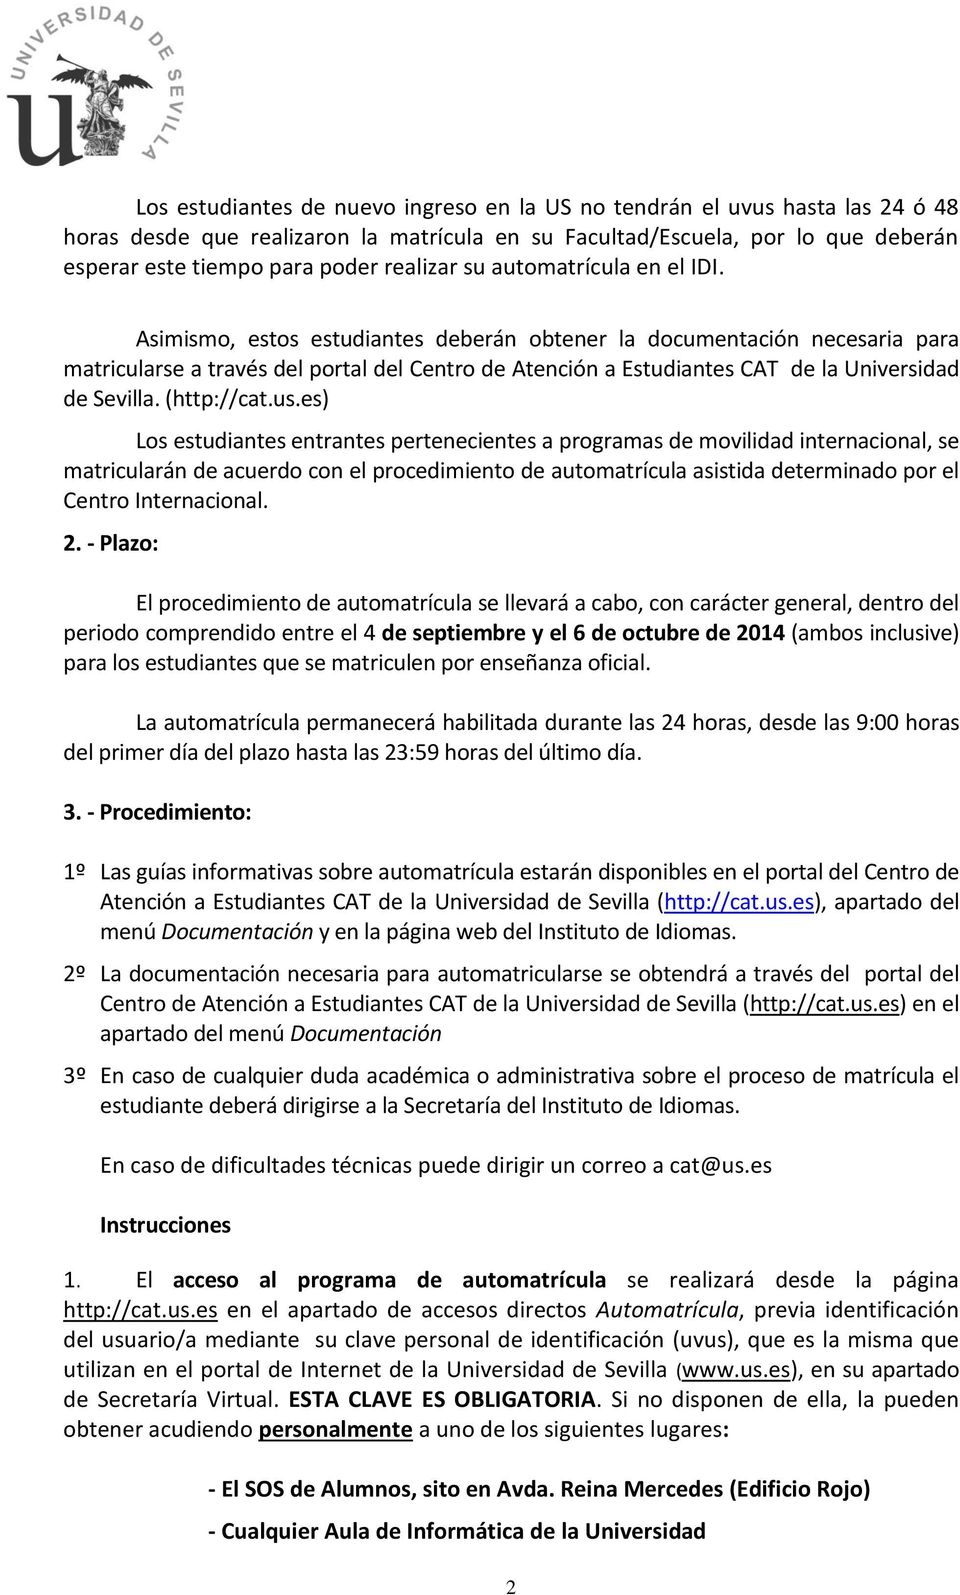 Asimismo, estos estudiantes deberán obtener la documentación necesaria para matricularse a través del portal del Centro de Atención a Estudiantes CAT de la Universidad de Sevilla. (http://cat.us.